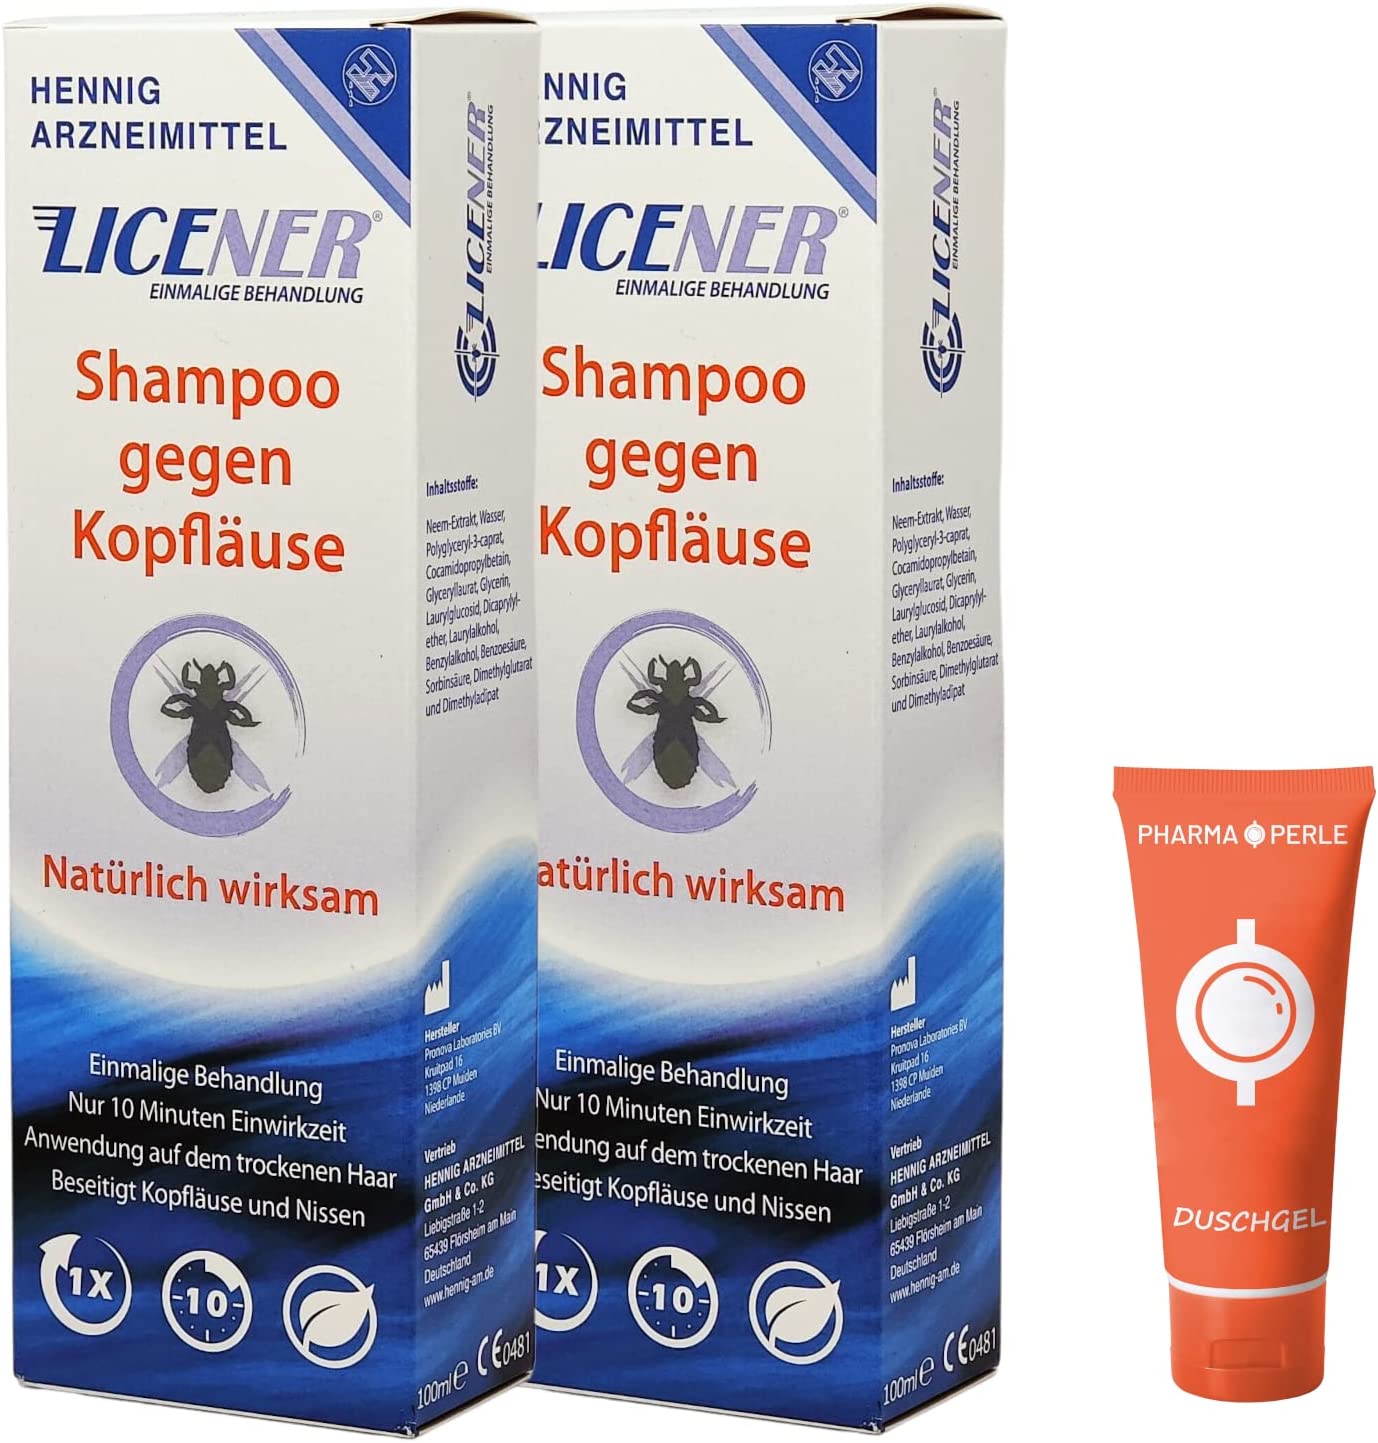 PHARMA PERLE Licener Shampoo gegen Kopfläuse I Sparset 2x 100ml plus PharmaPerle giveaway